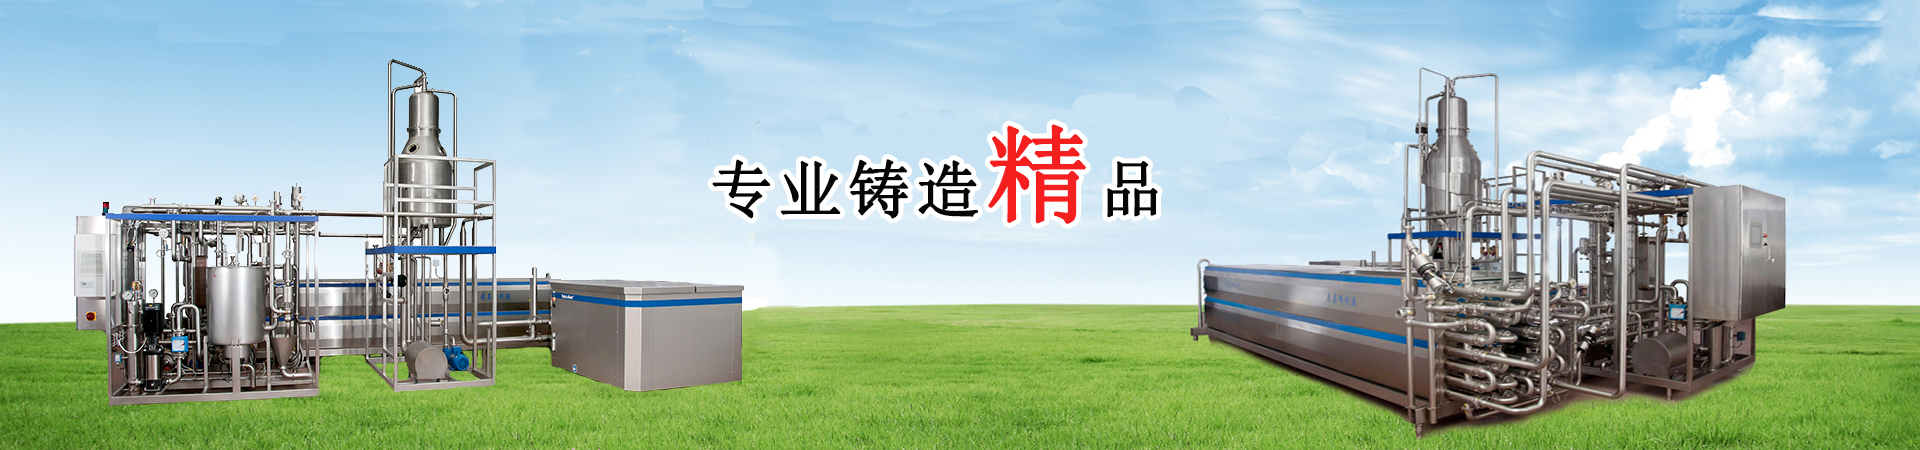 关于当前产品biwn官网·(中国)官方网站的成功案例等相关图片